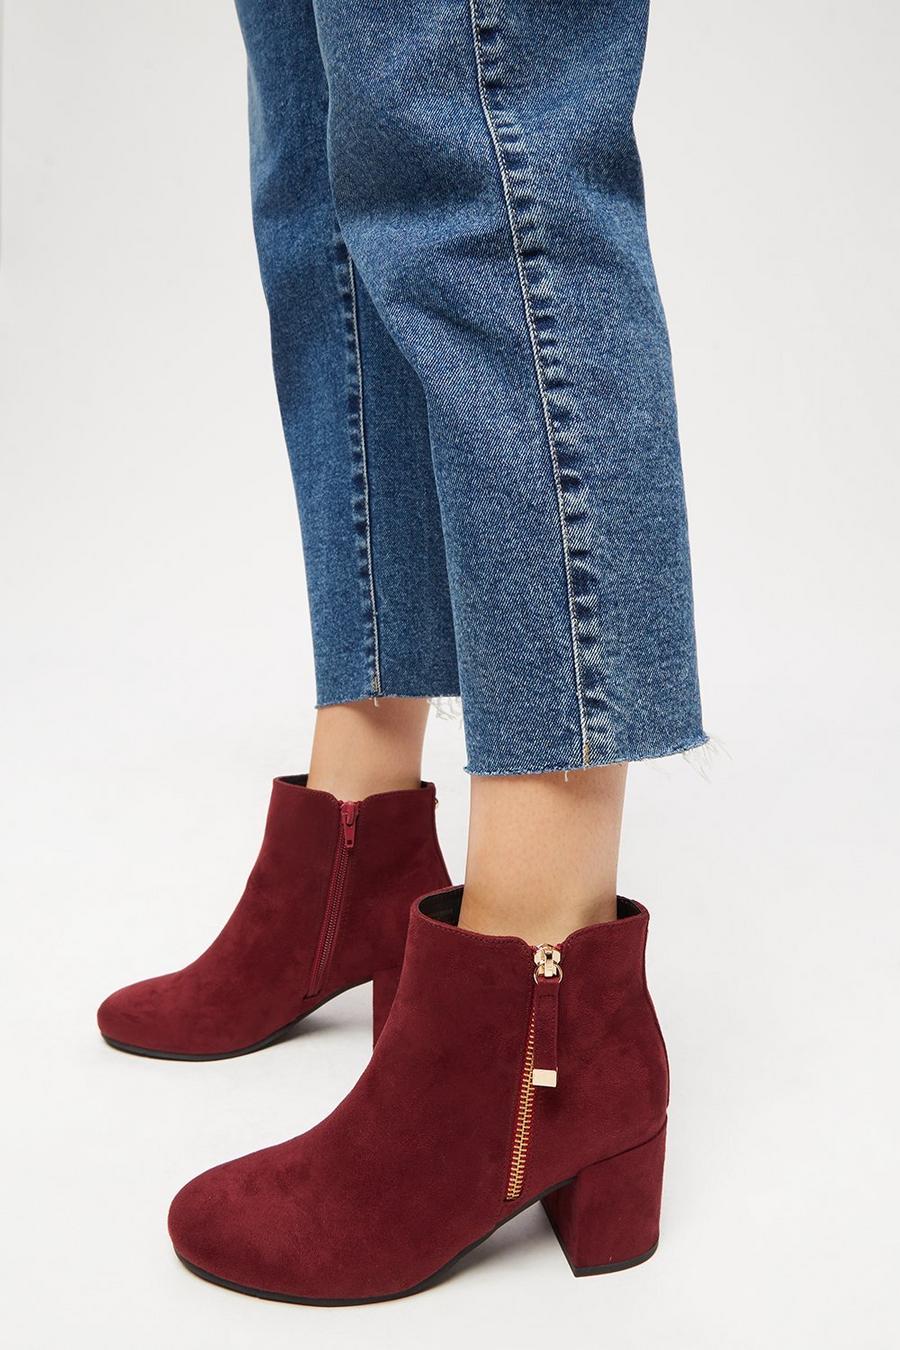 Wide Fit Amber Side Zip Block Heel Jeans Boot